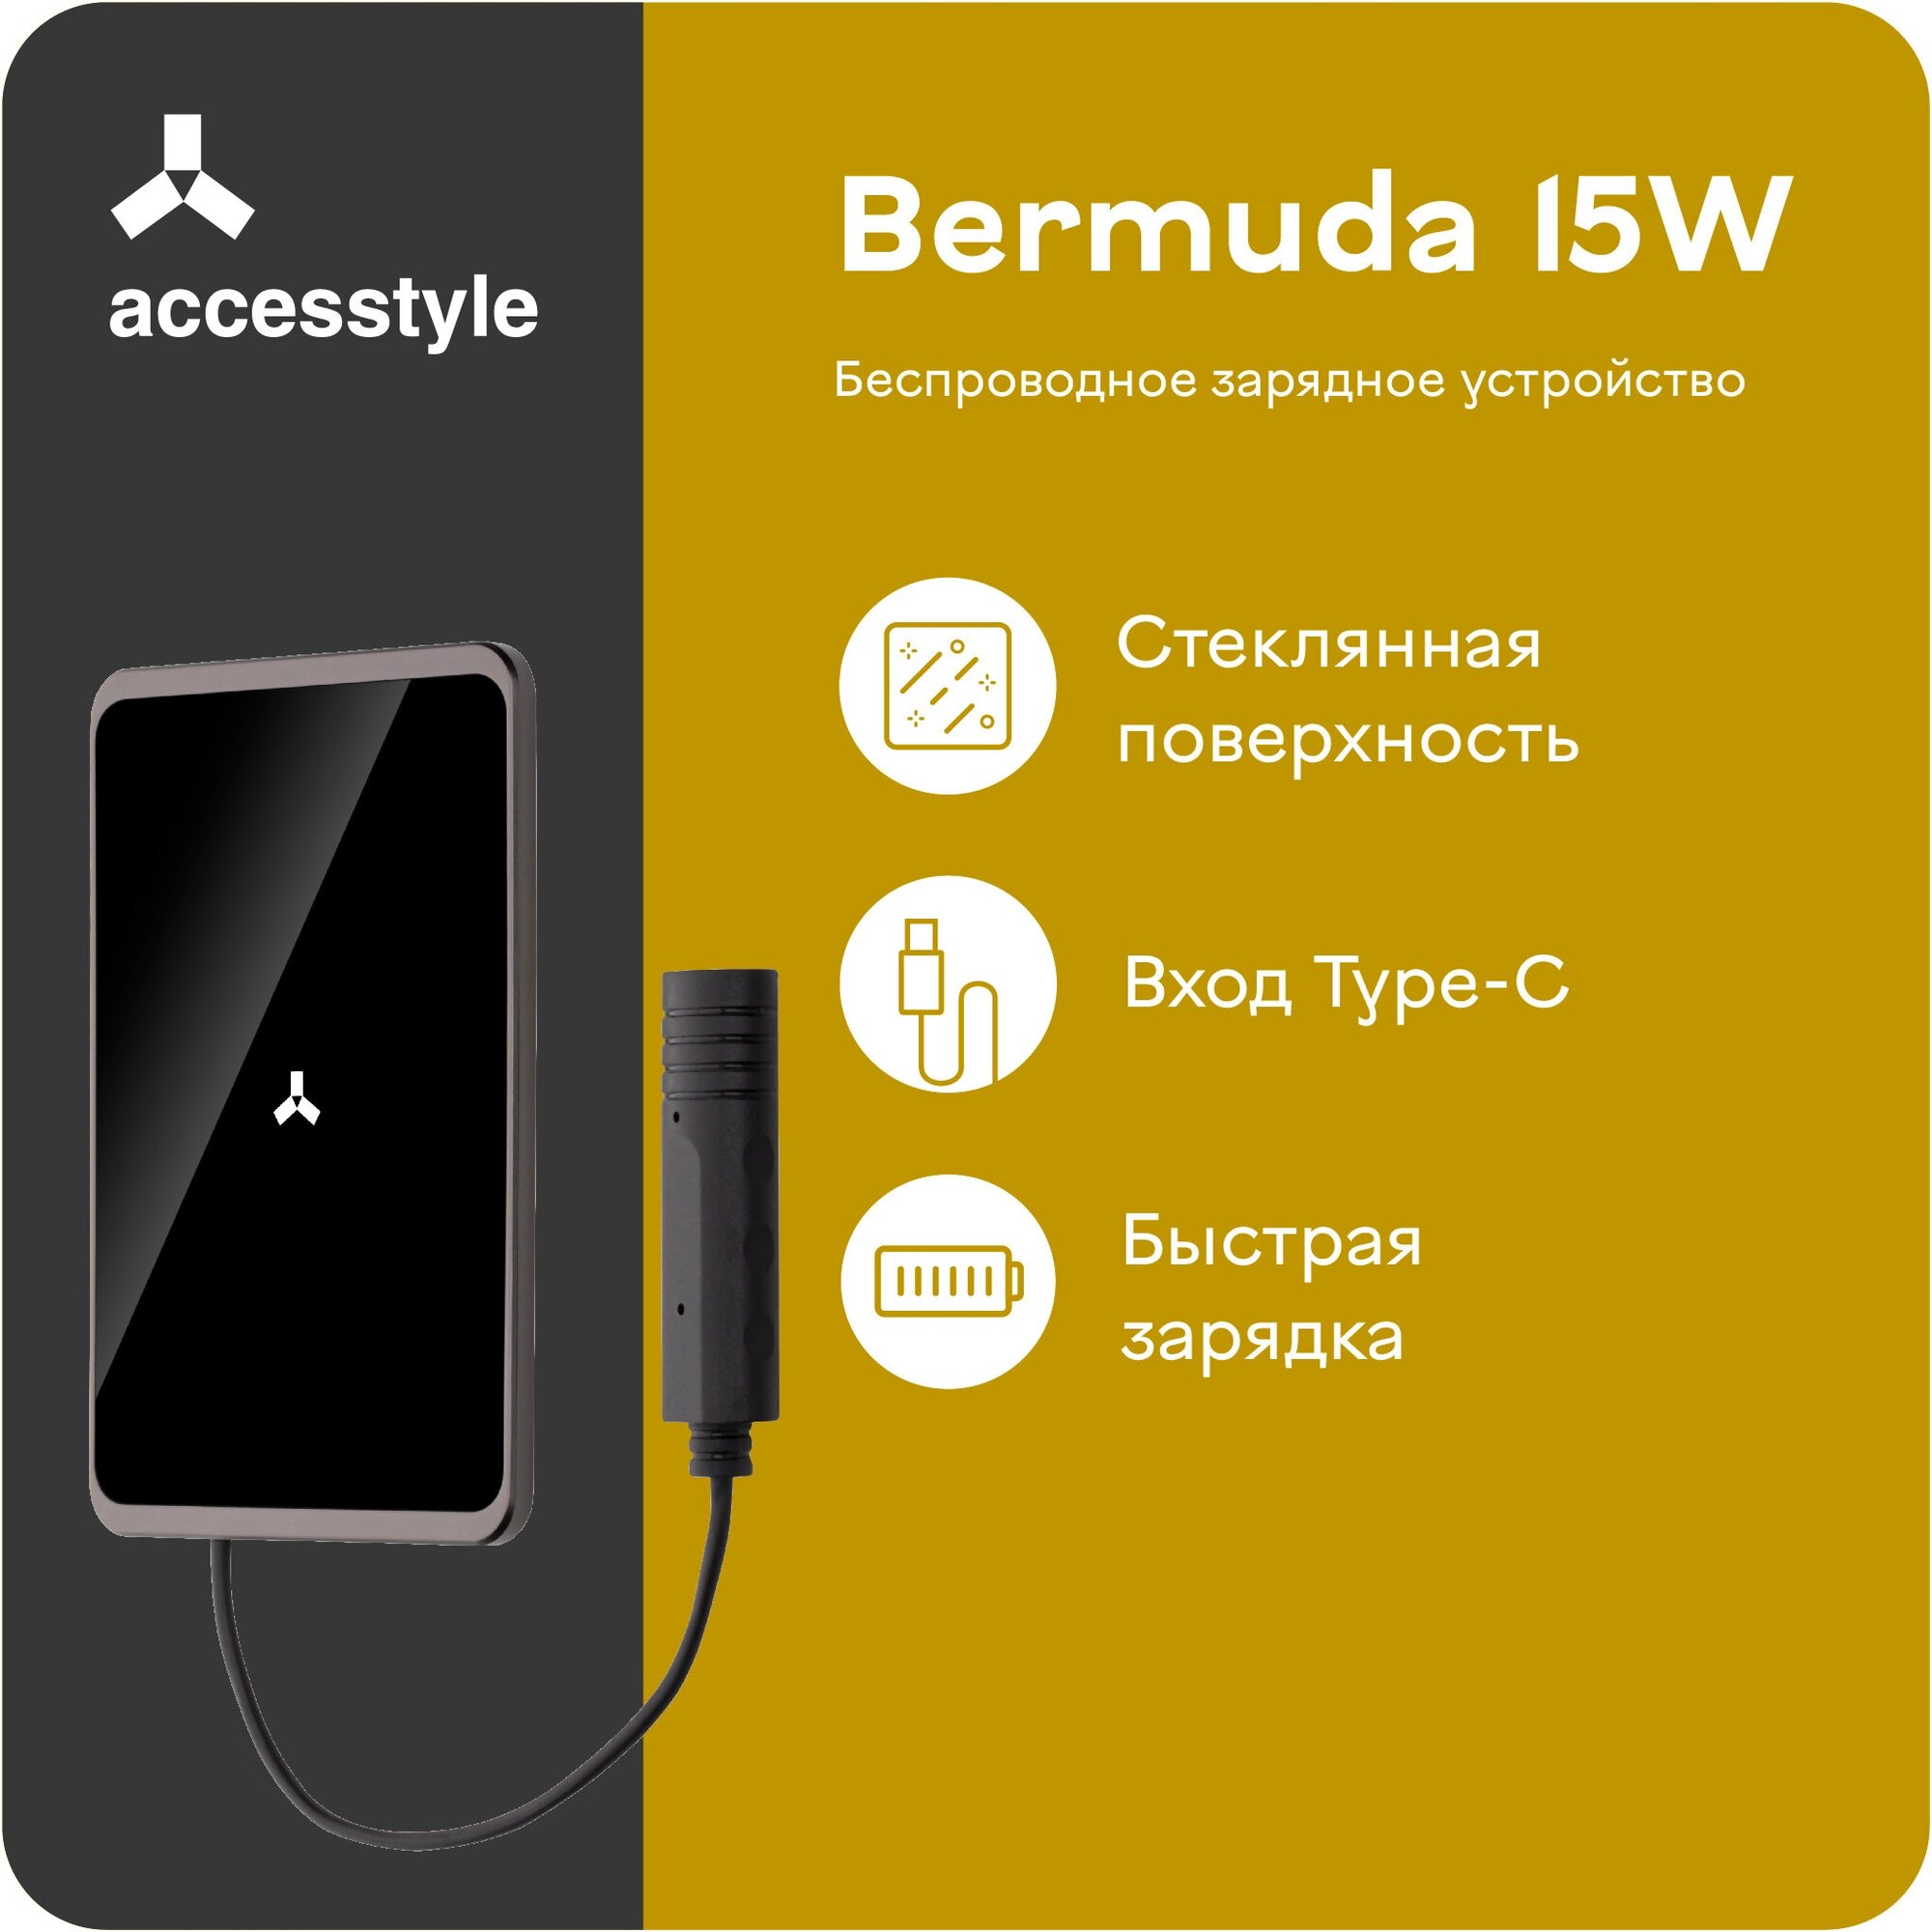 Беспроводное зарядное устройство Accesstyle Bermuda 15W, USB type-C, 2A, черный Noname - фото №1